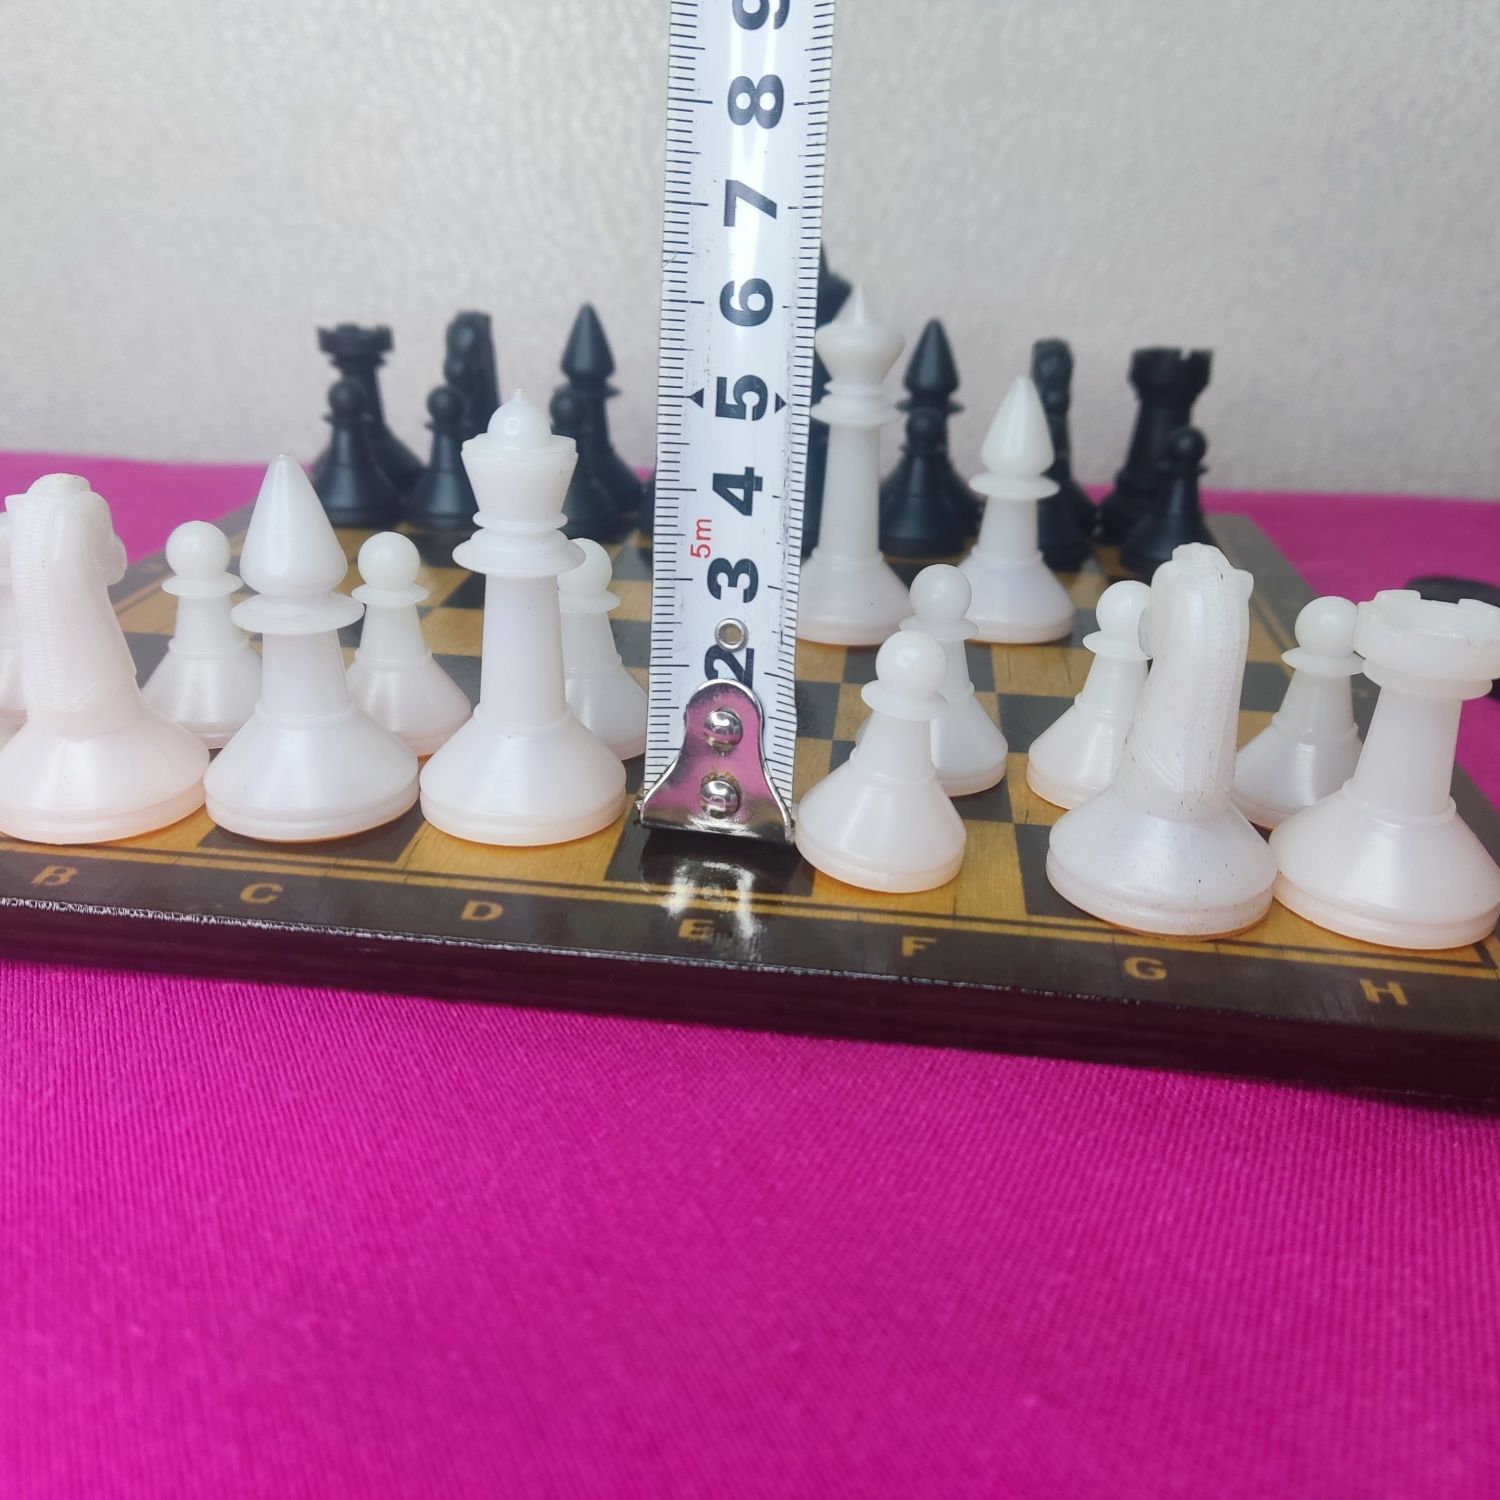 Деревянная шахматная доска времён СССР шашки и шахматы поастиковые